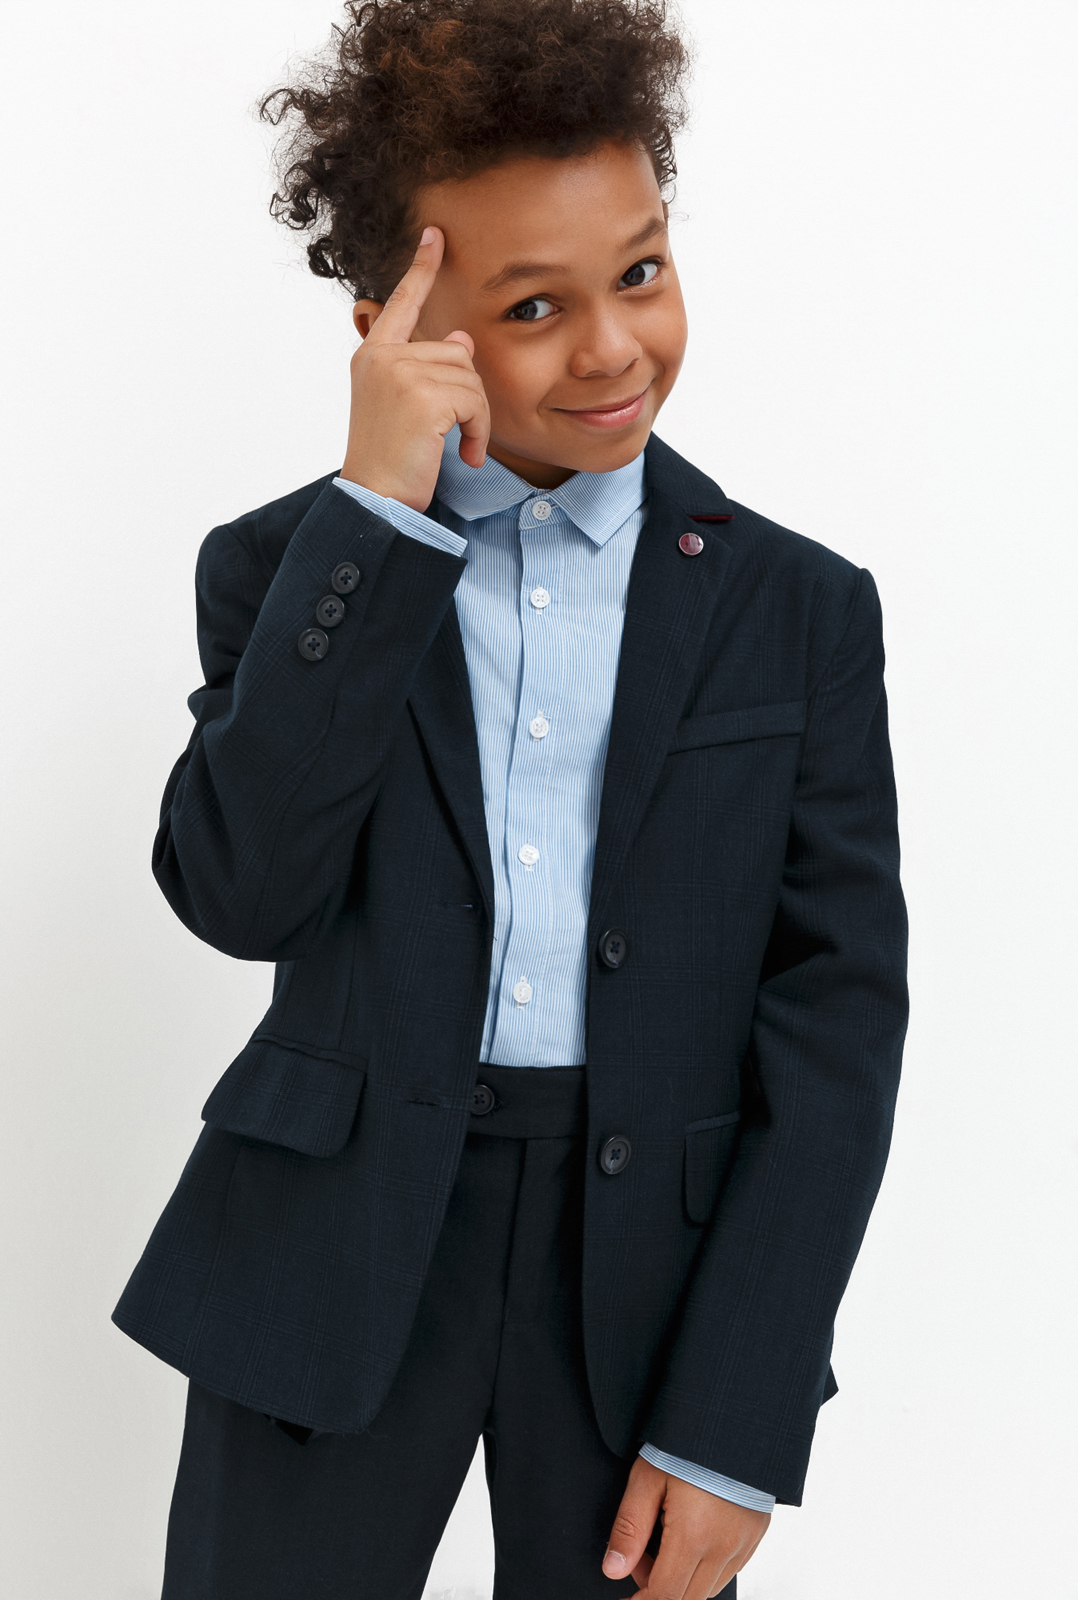 Пиджак для мальчика Acoola Chandler, цвет: темно-голубой. 20140130030_600. Размер 122